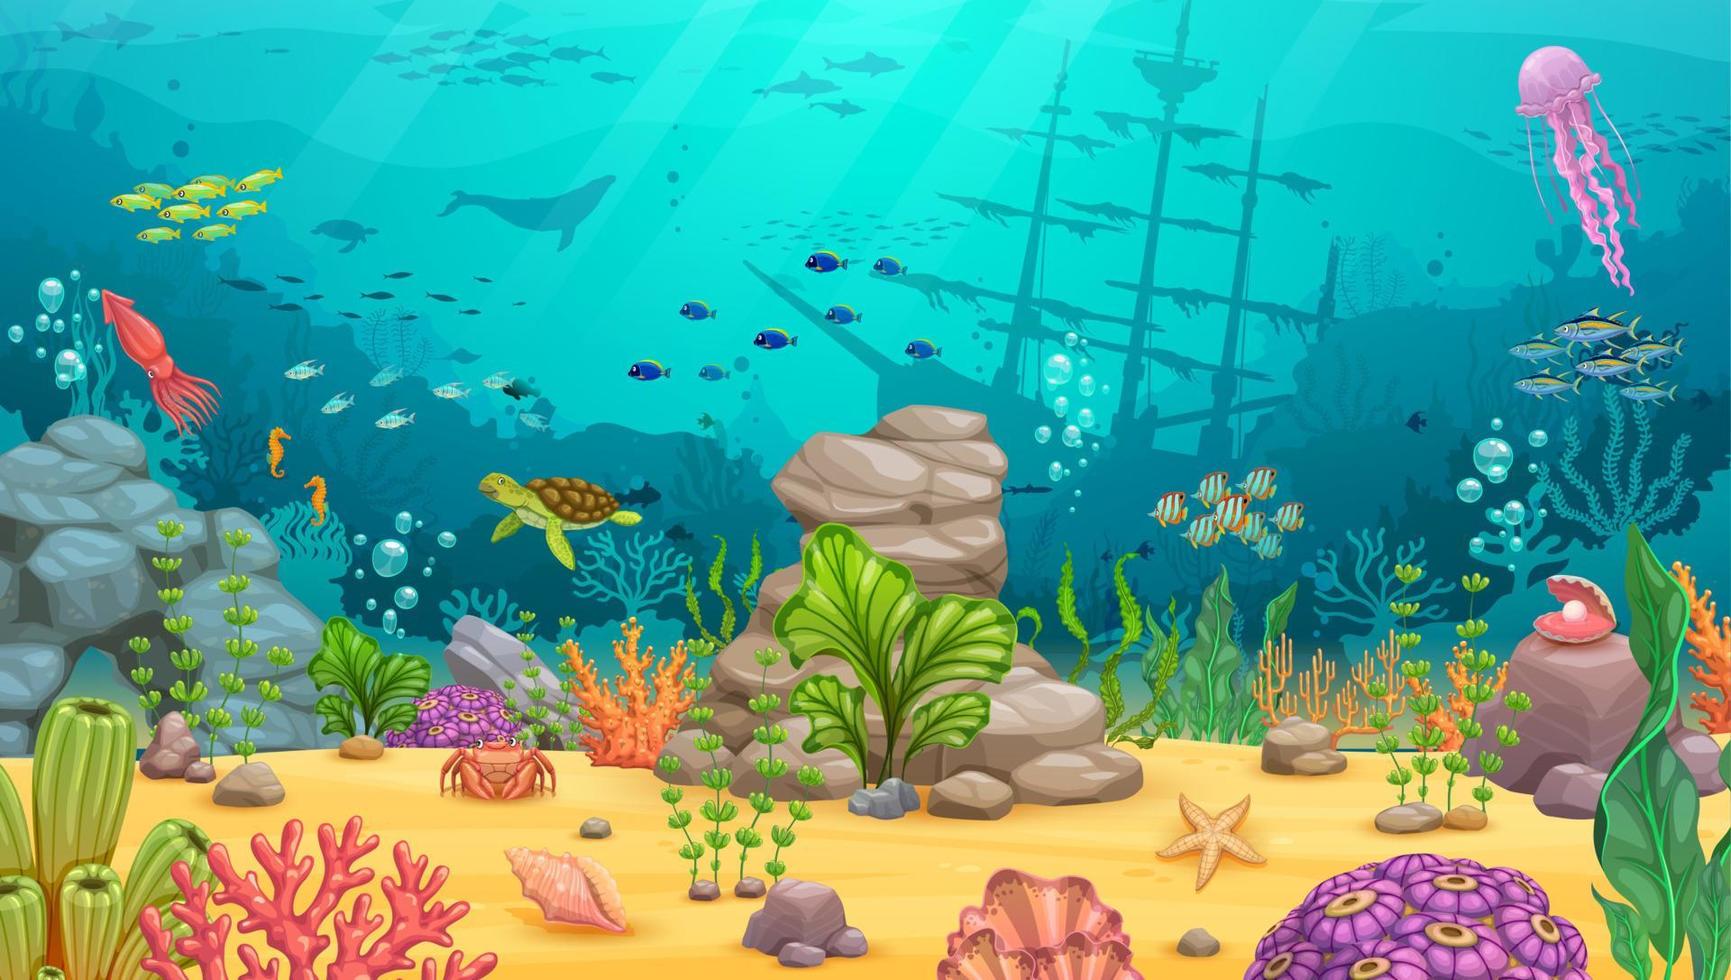 paysage sous-marin de dessin animé, fond de jeu vecteur